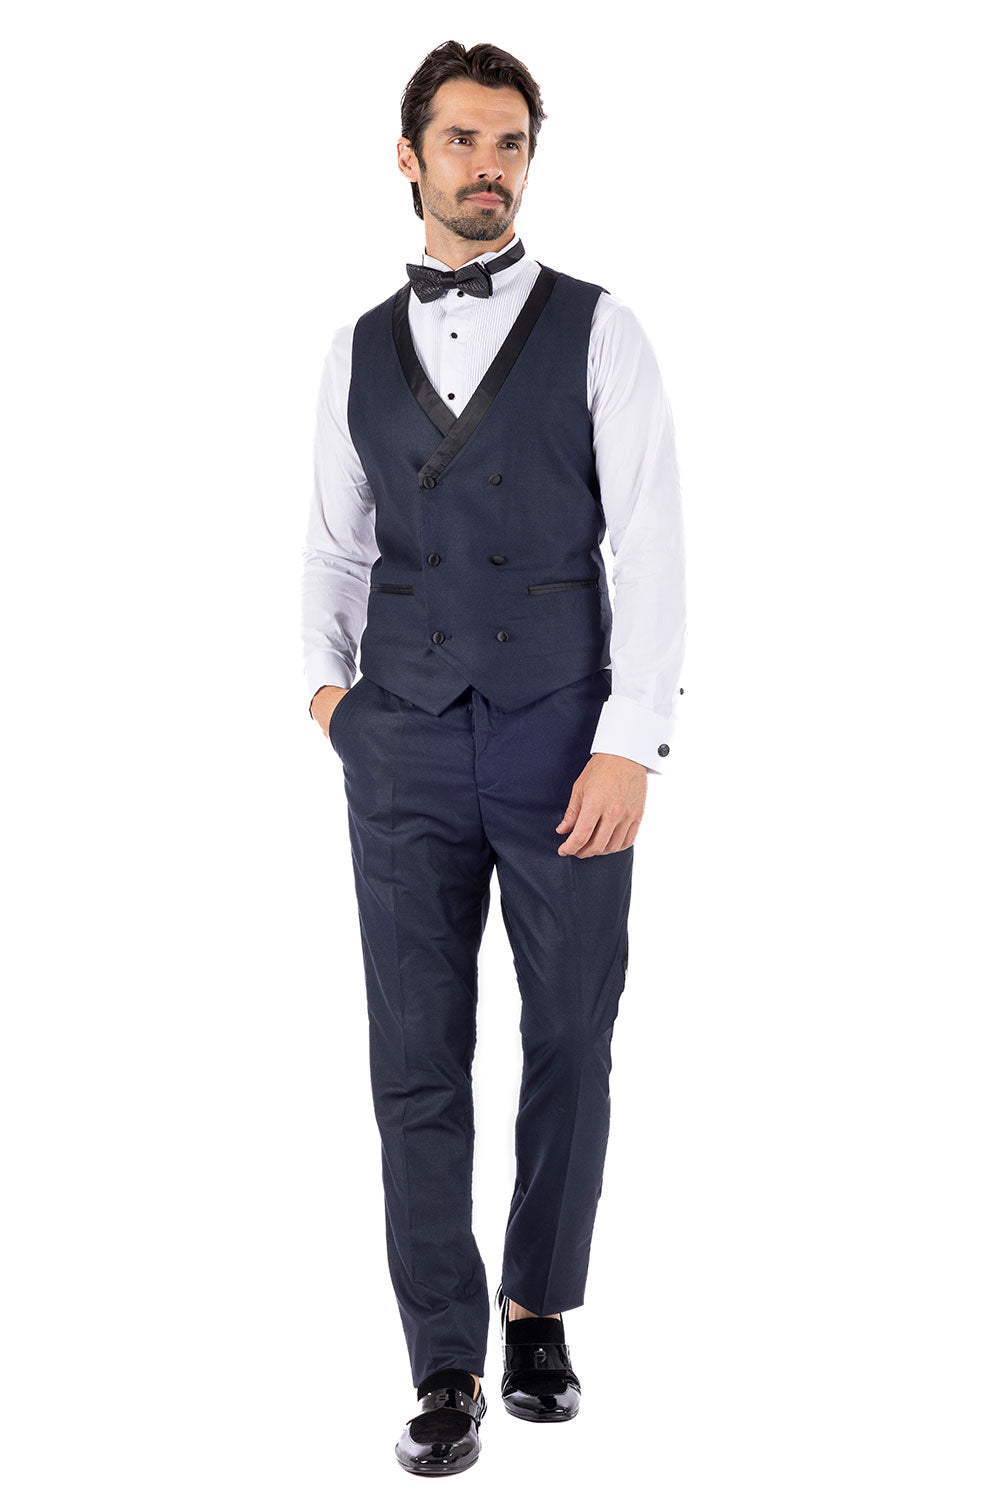 BARABAS Men's Solid Color Shawl Lapel Suit Vest Set 4TU04 Navy